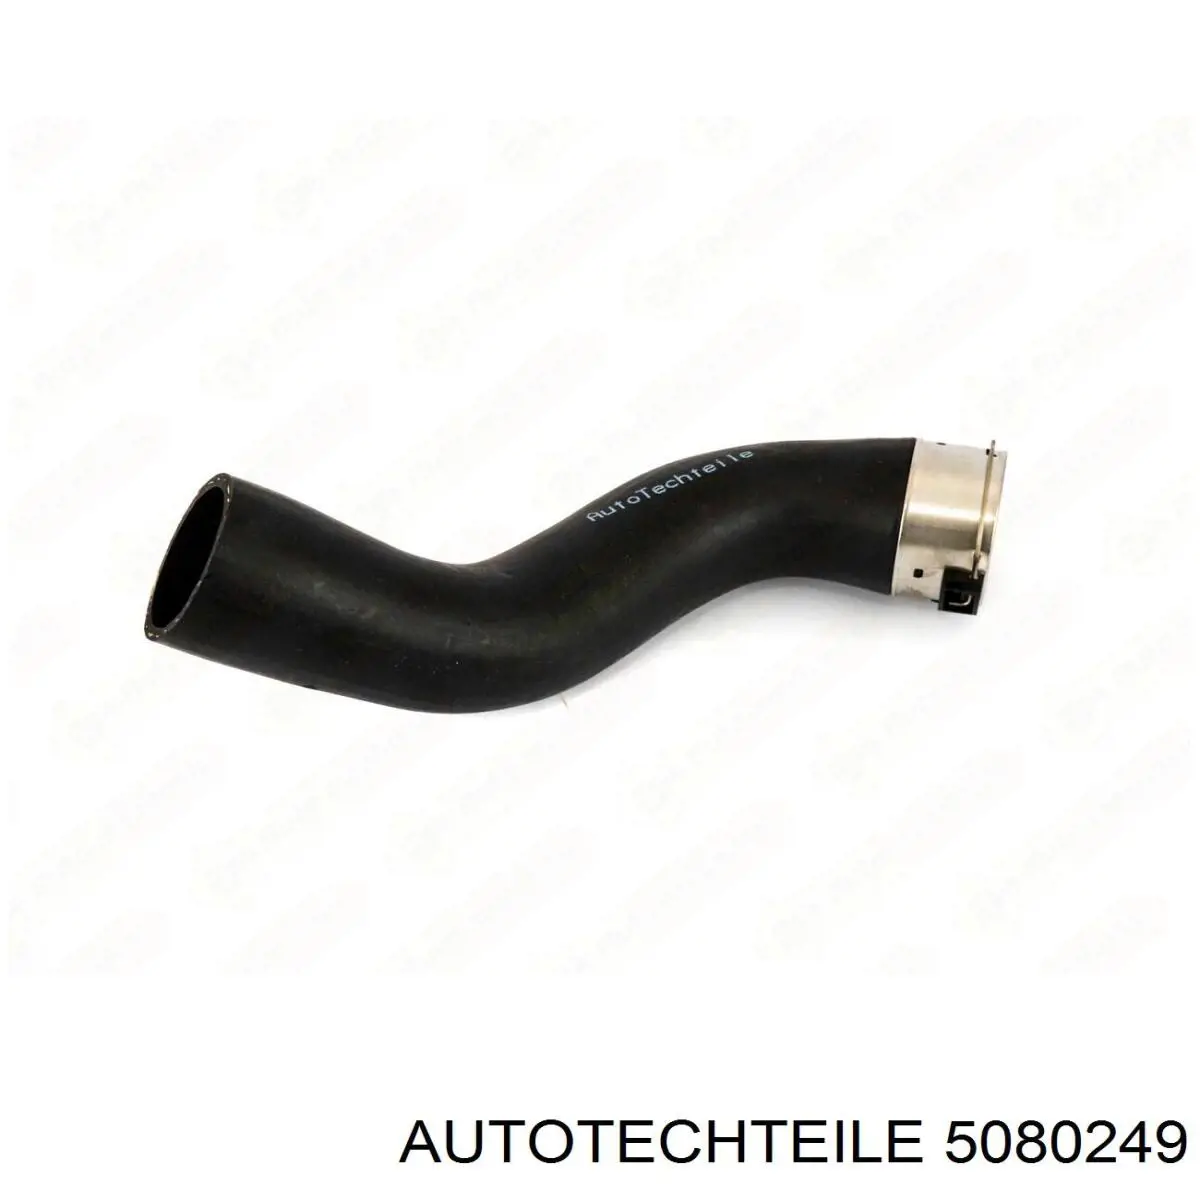 508 0249 Autotechteile tubo flexible de aire de sobrealimentación inferior derecho